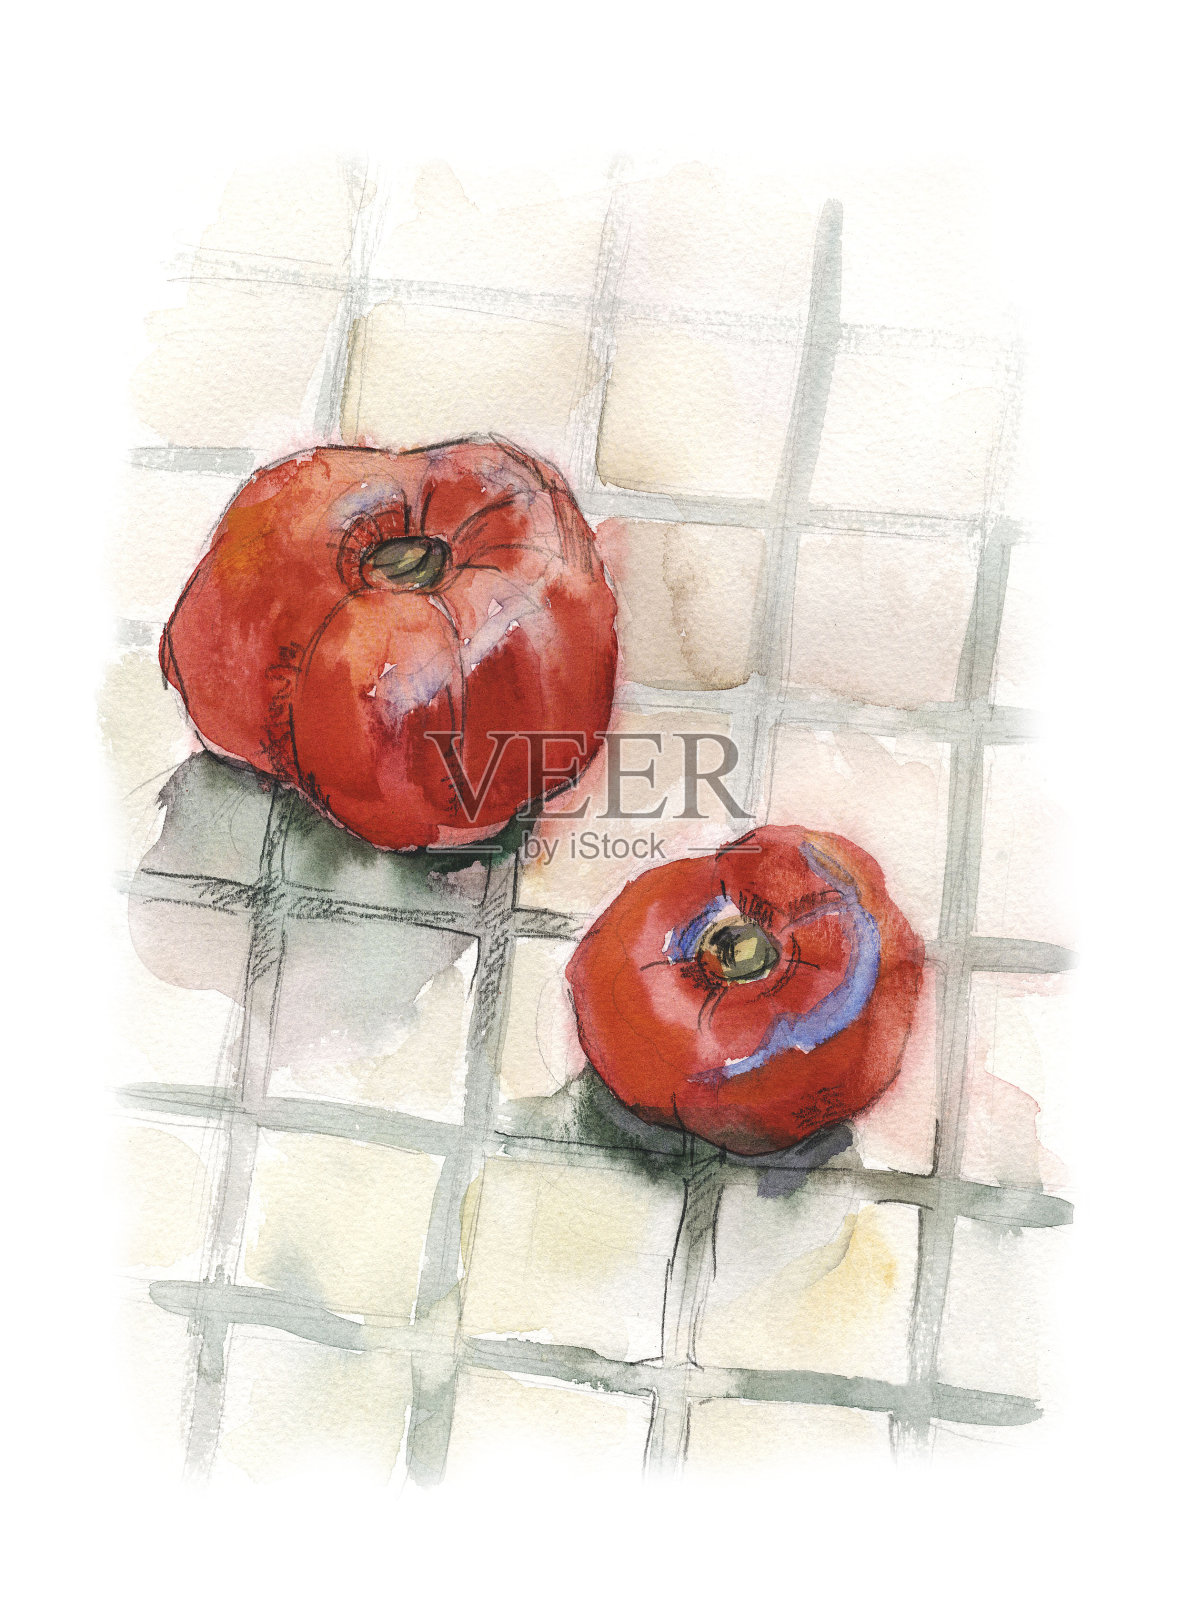 方砖地板上放着两个成熟的红番茄。水彩画插图。插画图片素材